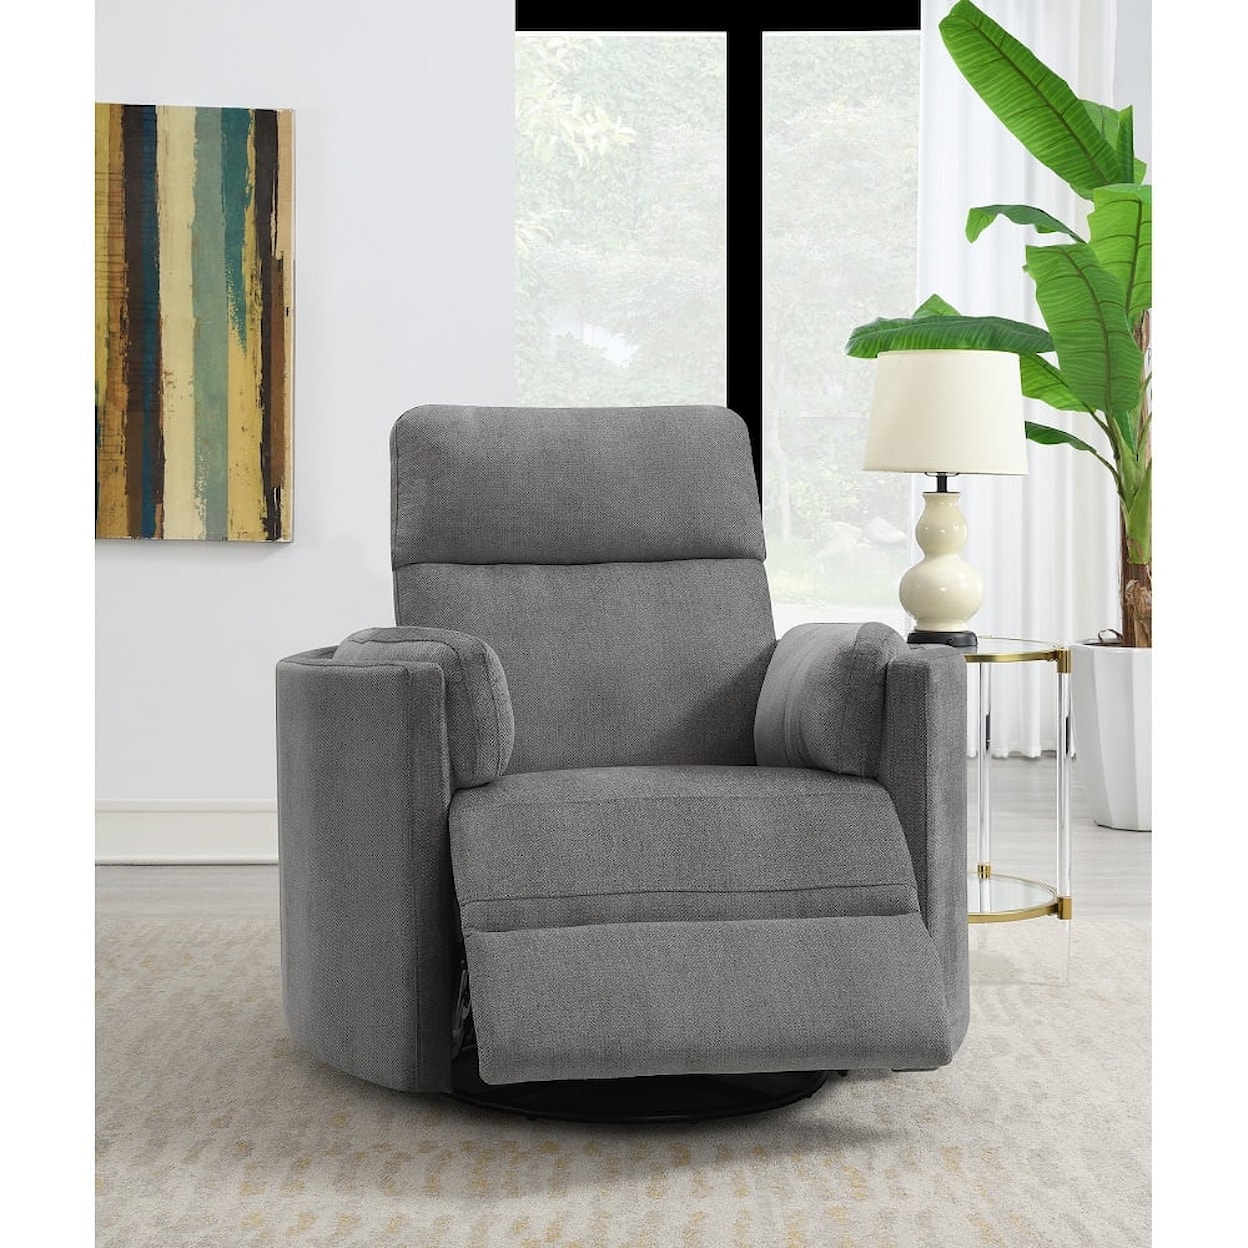 Acme Furniture Sagen Recliner W/Swivel & Glider